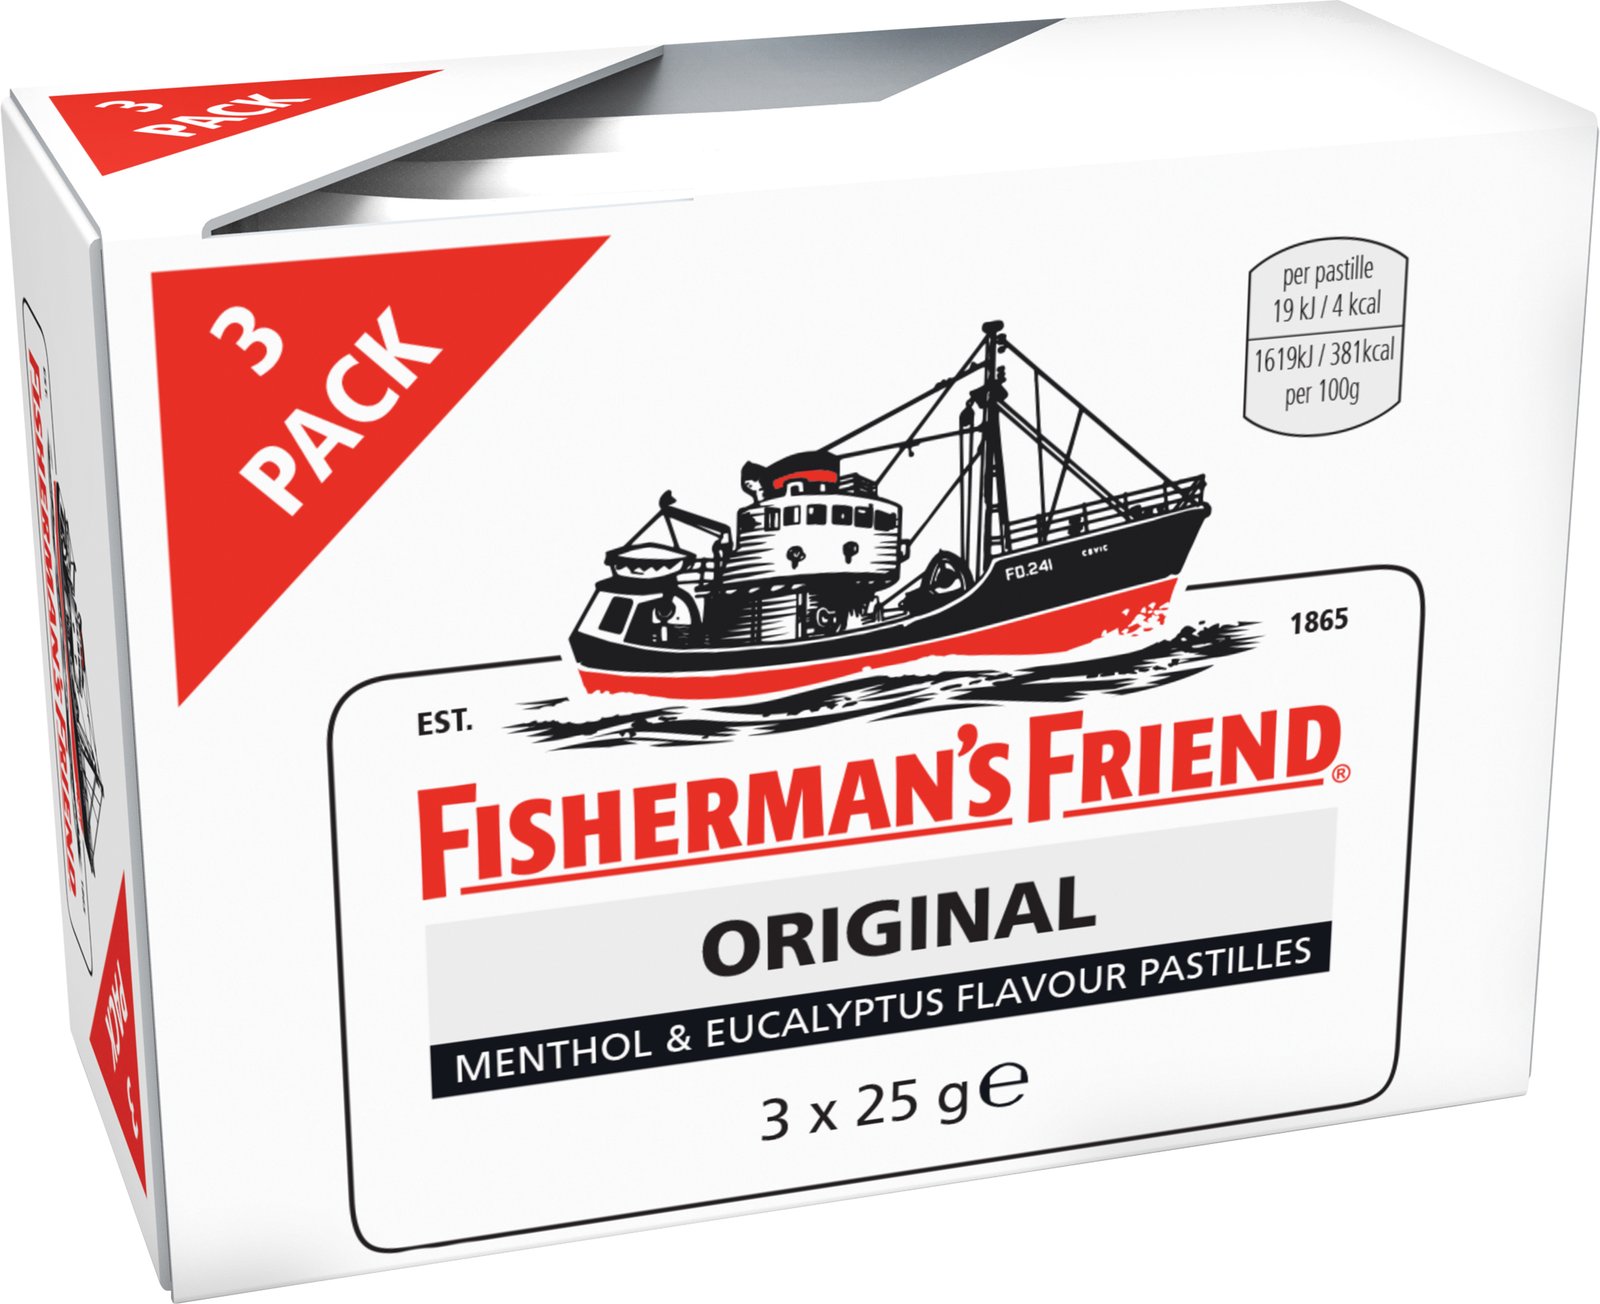 Fisherman's Friend Original 3 x 25 g